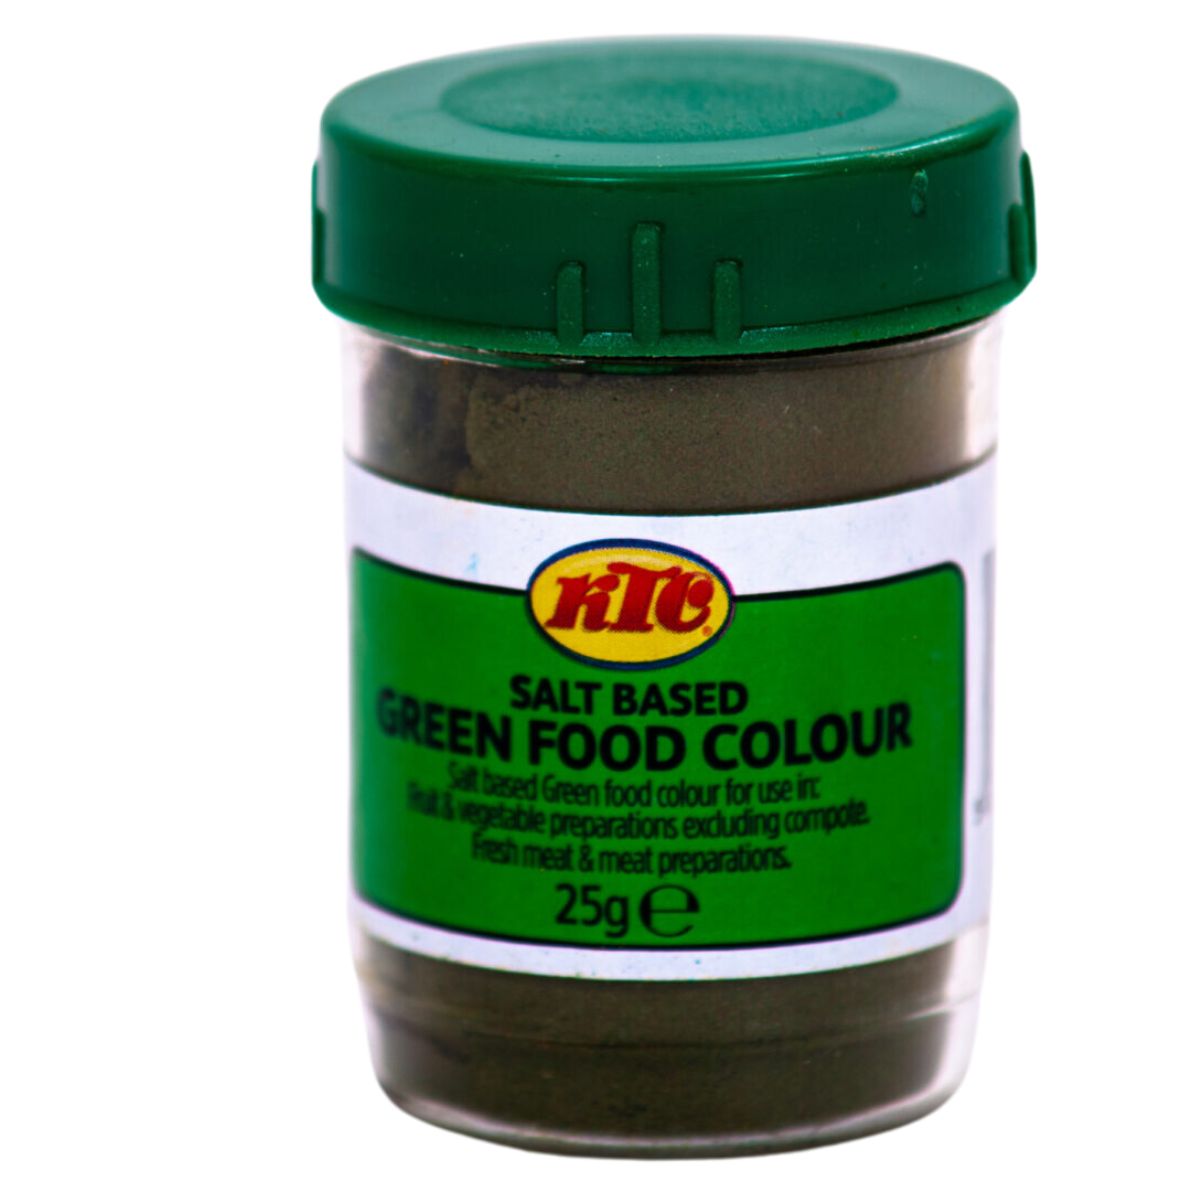 A jar of KTC - Green Food Colour - 25g, salt-based.